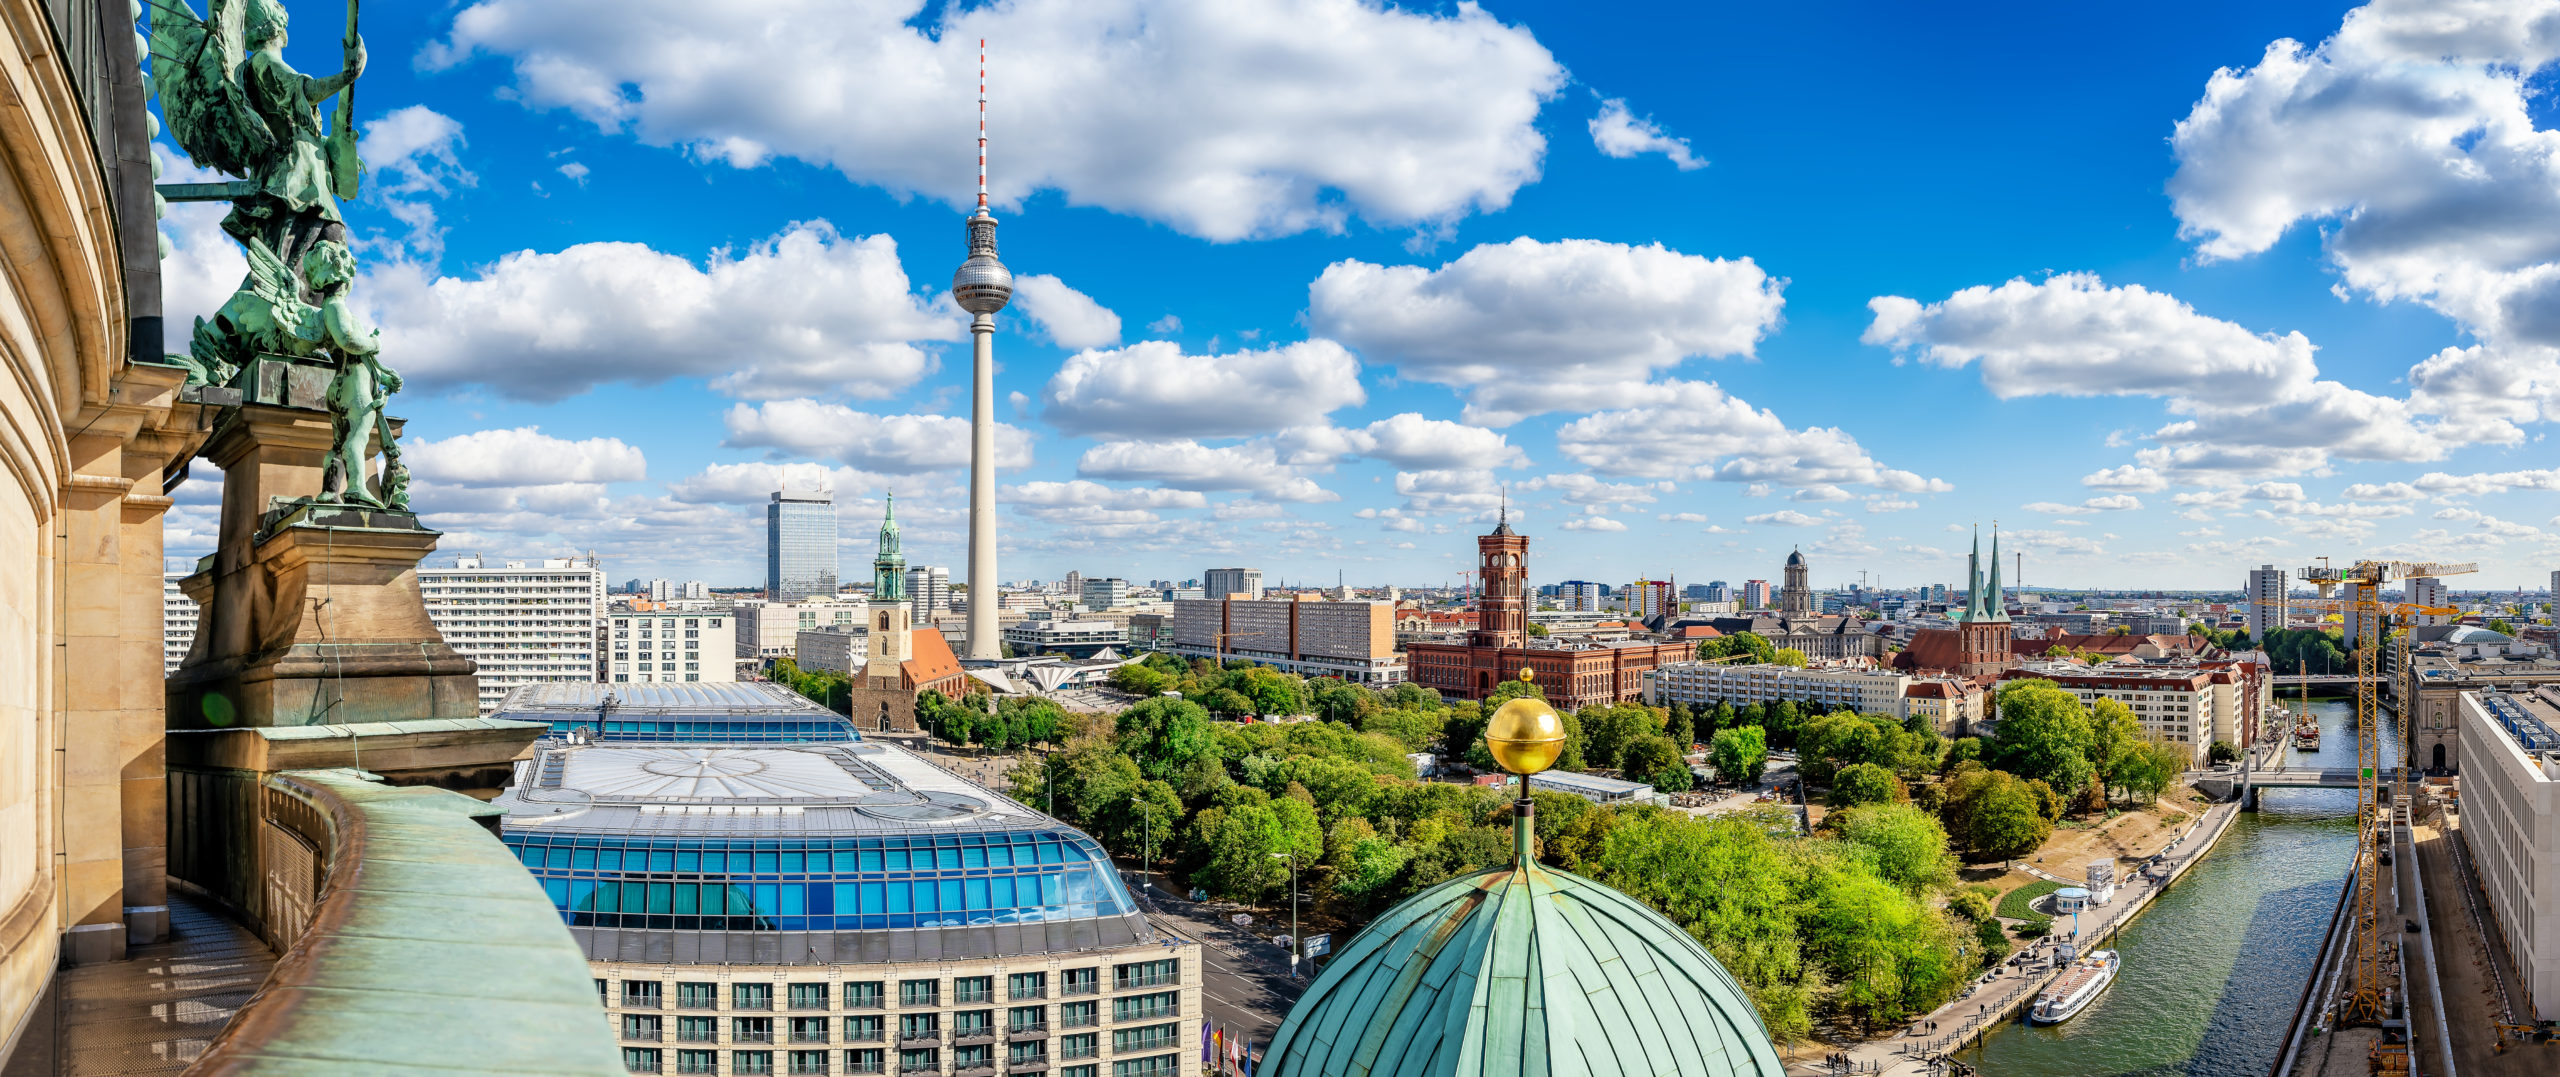 Was kann man in Berlin machen? Die Top 10 Aktivitäten in der Hauptstadt